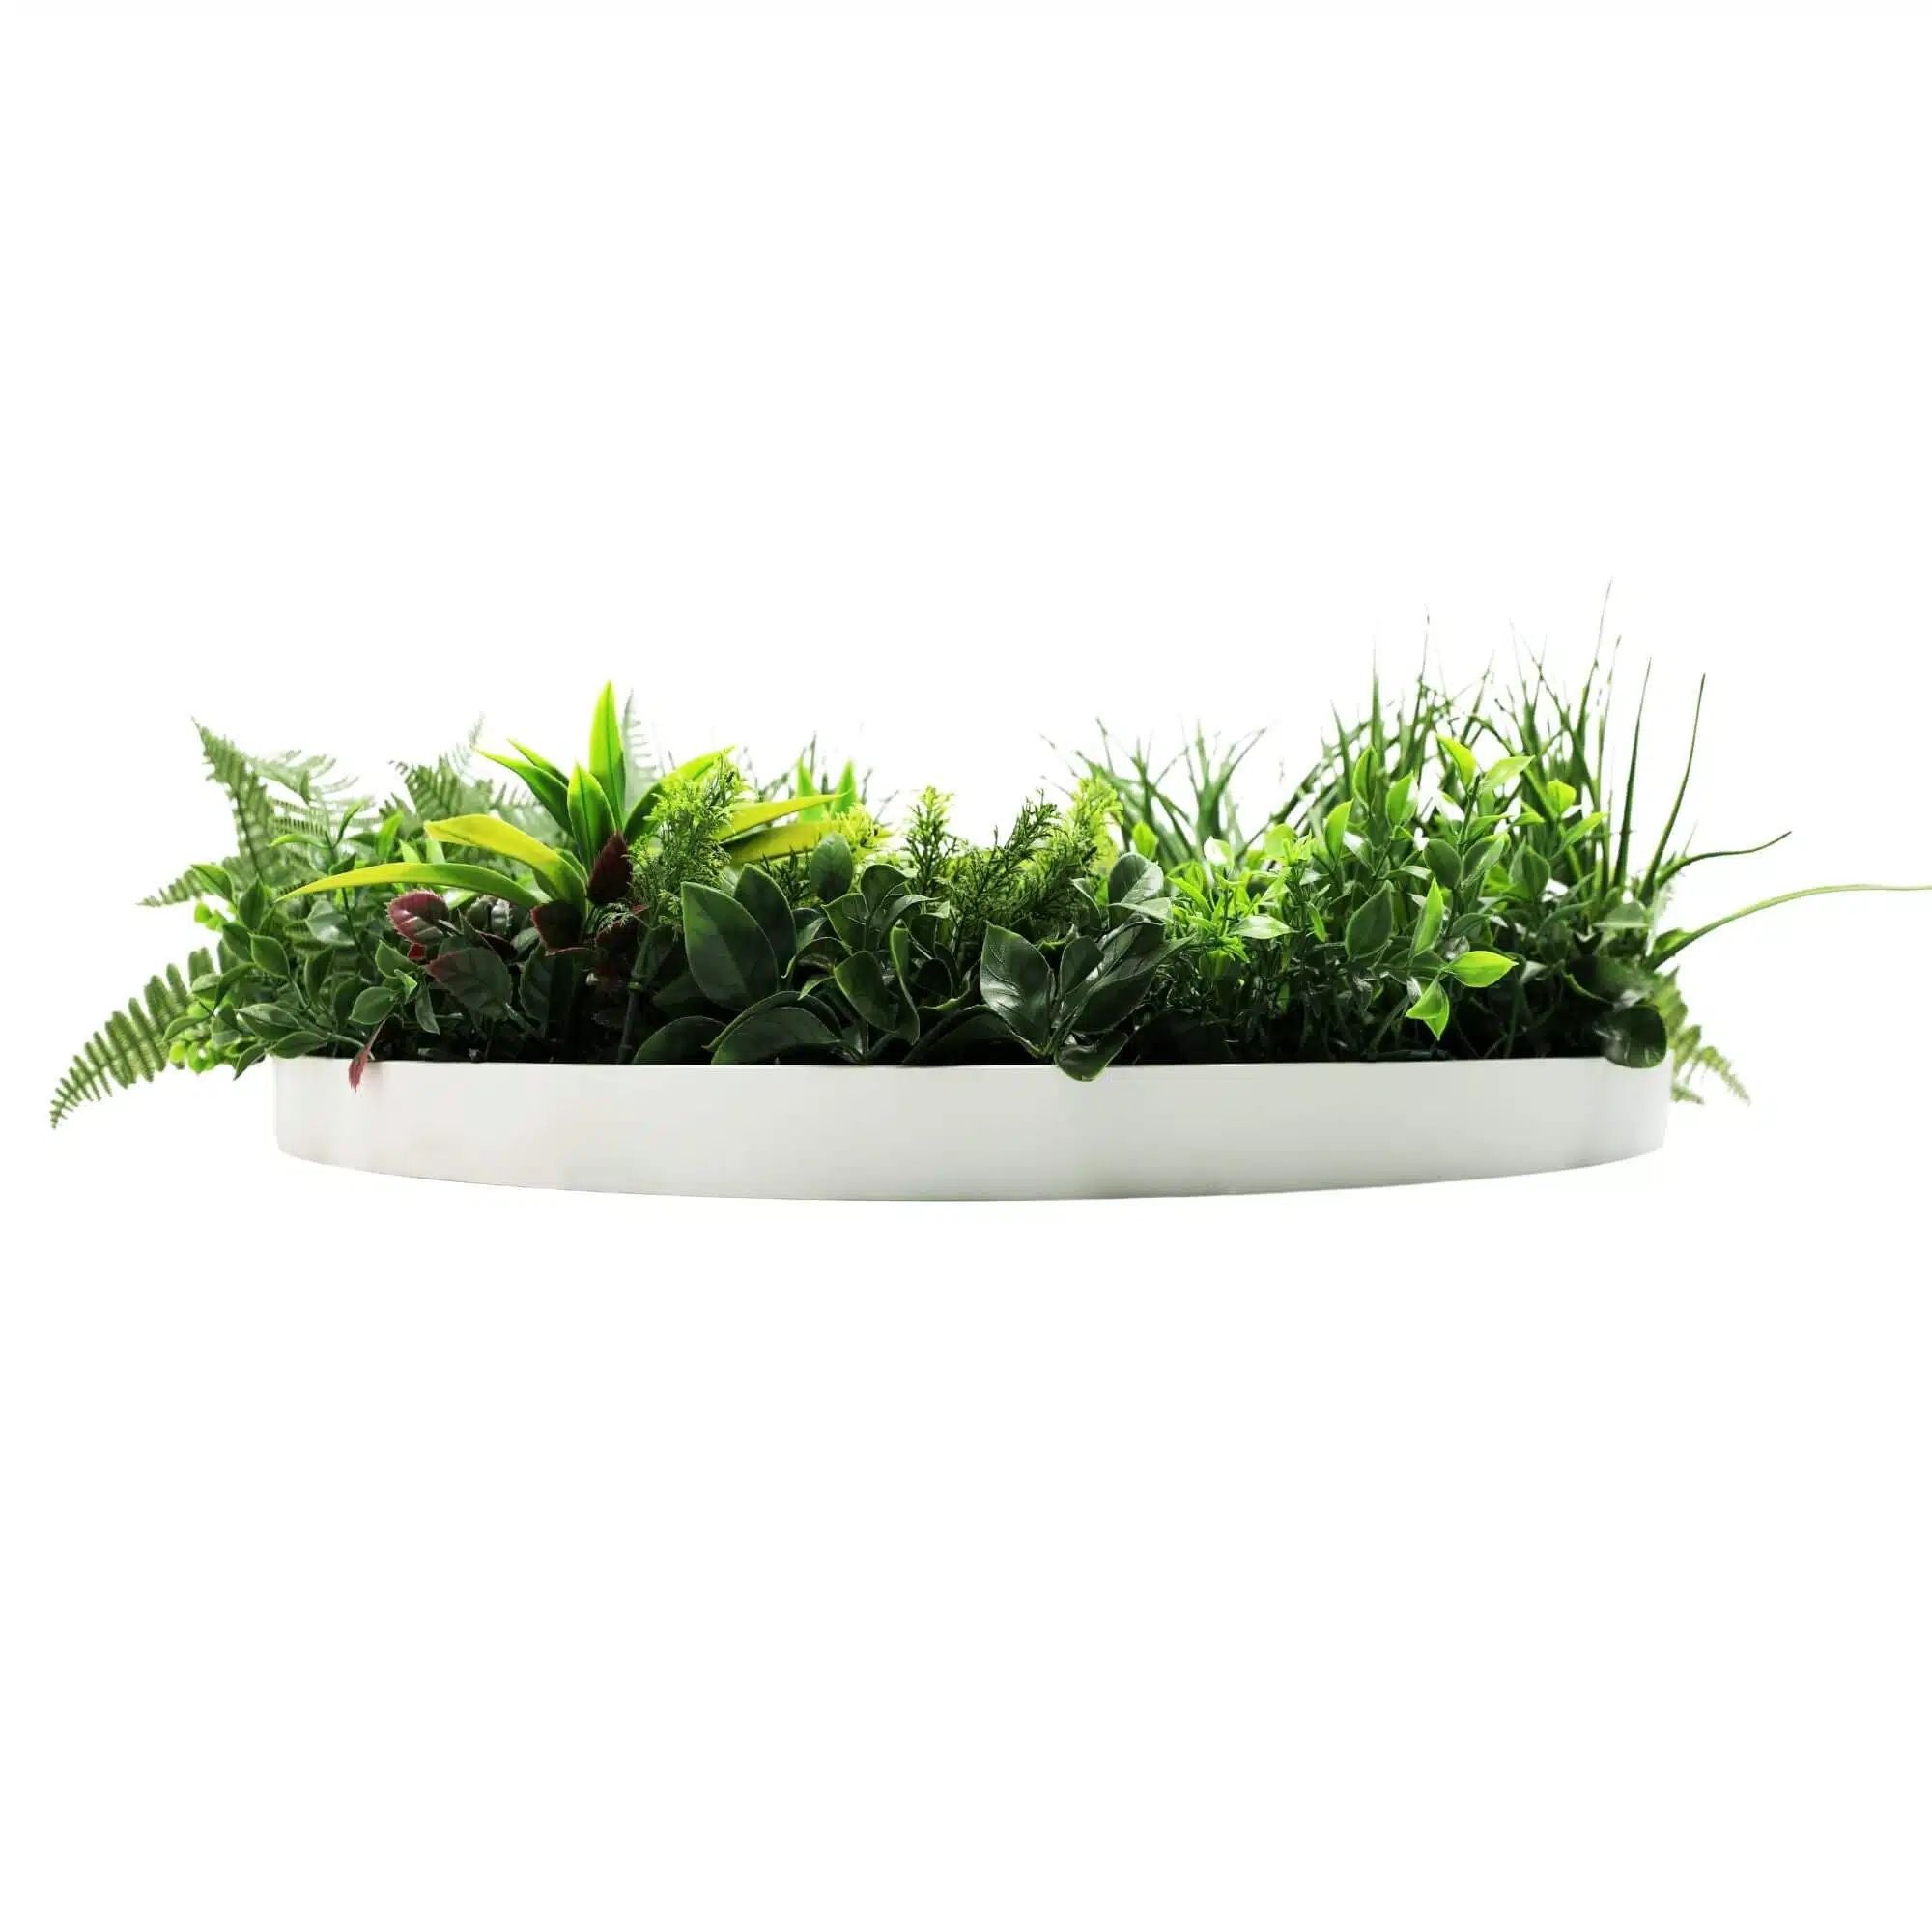 Slimline Artificial Green Wall Disc Art 80cm Country Fern UV Resistant (White) - Designer Vertical Gardens Artificial vertical garden wall disc